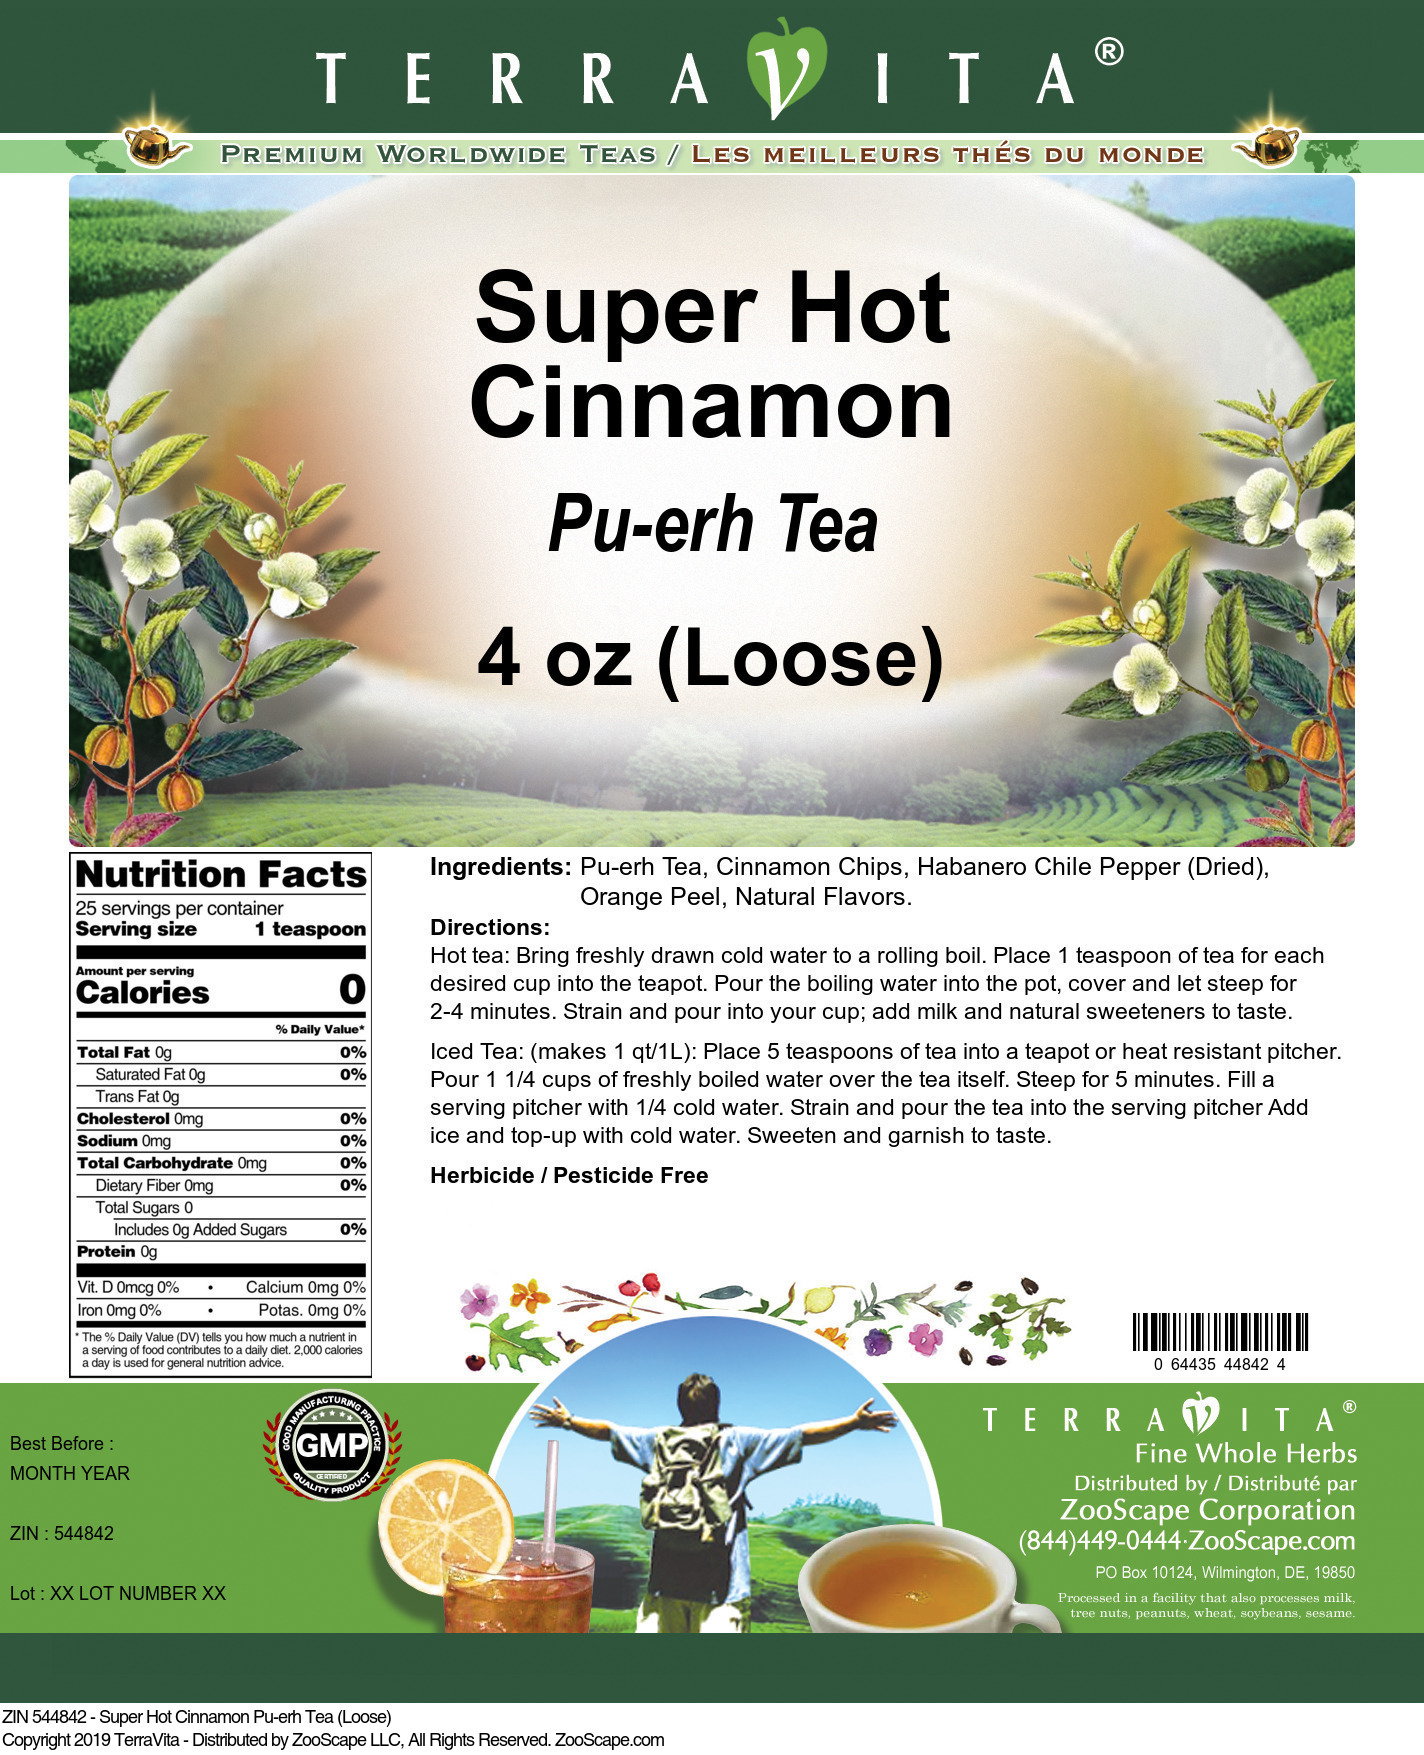 Super Hot Cinnamon Pu-erh Tea (Loose) - Label